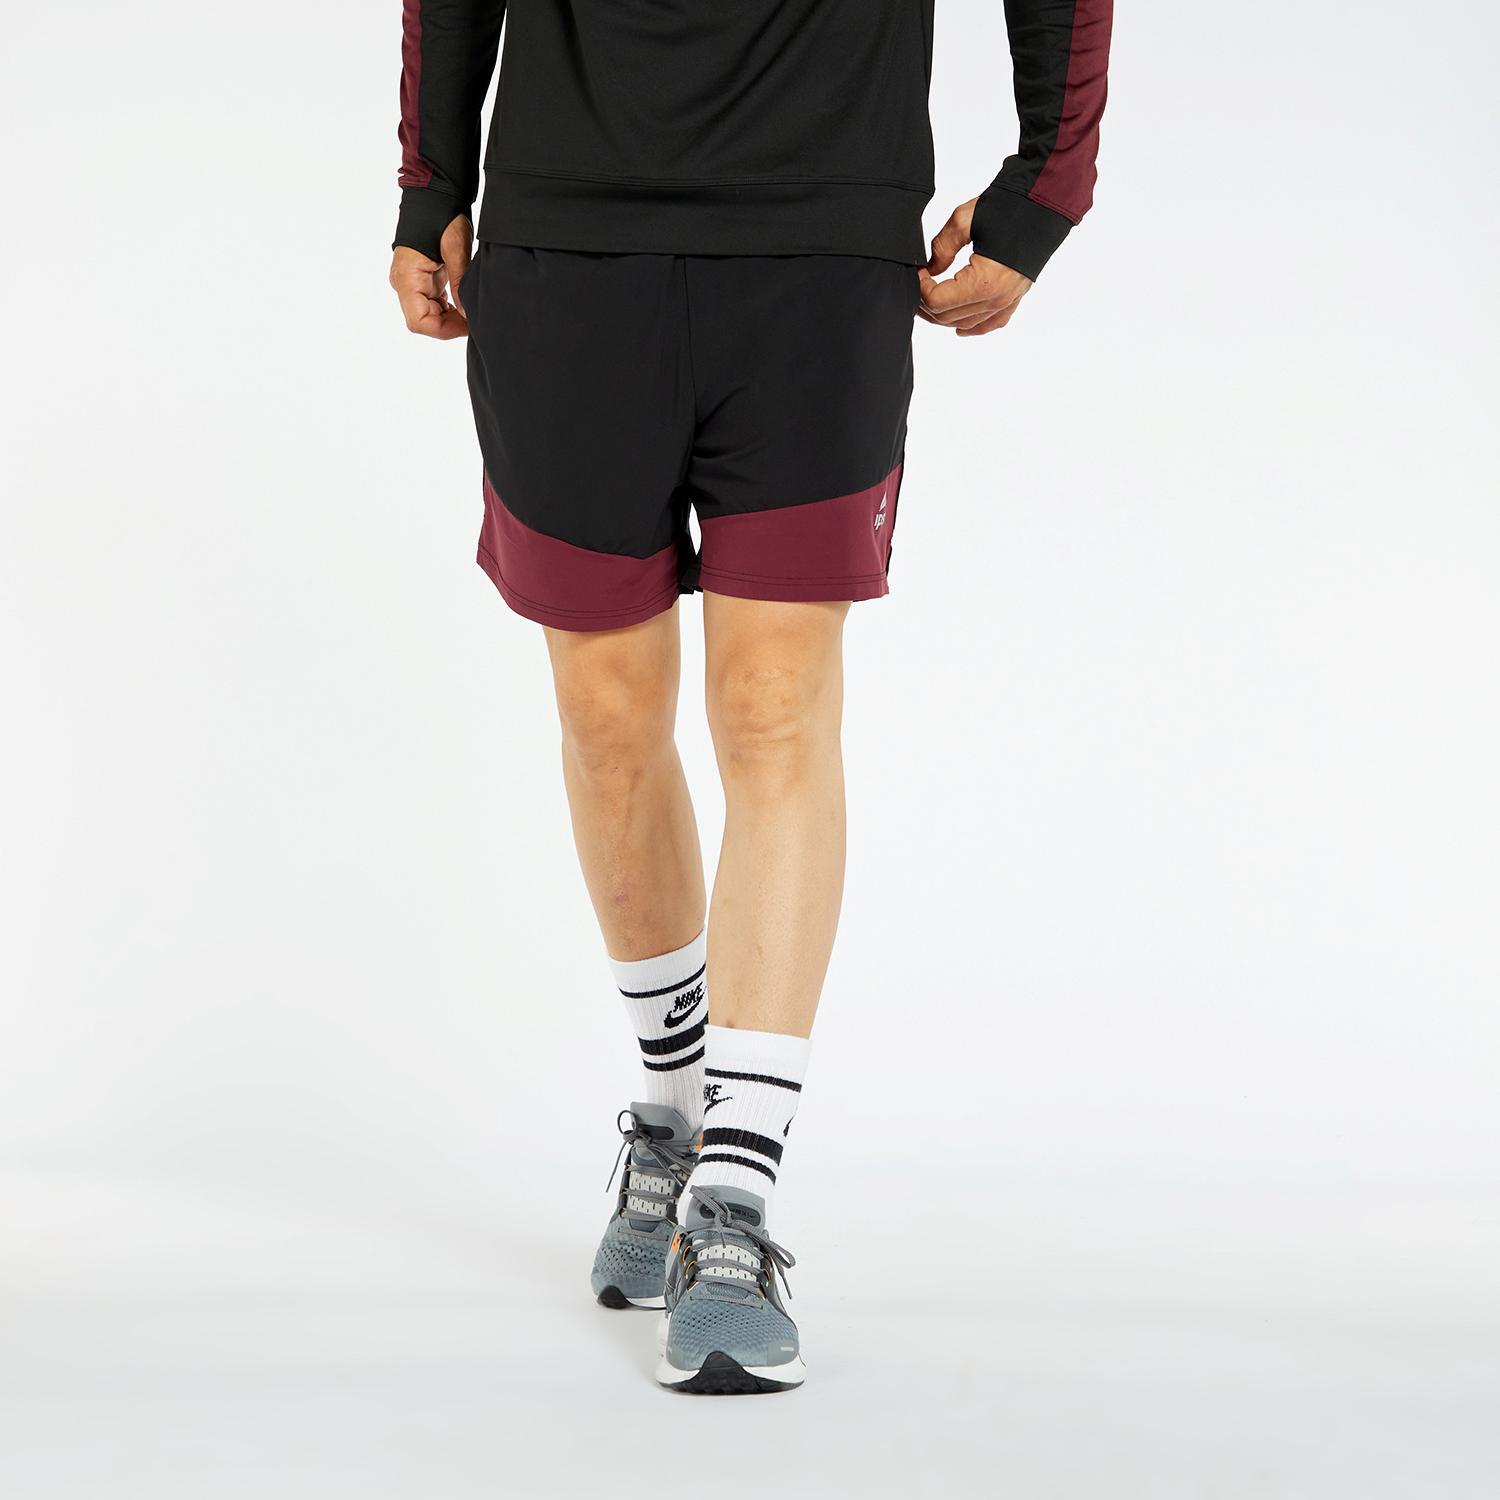 Ipso Combi 2 - Noir - Pantalon Running Homme sports taille L